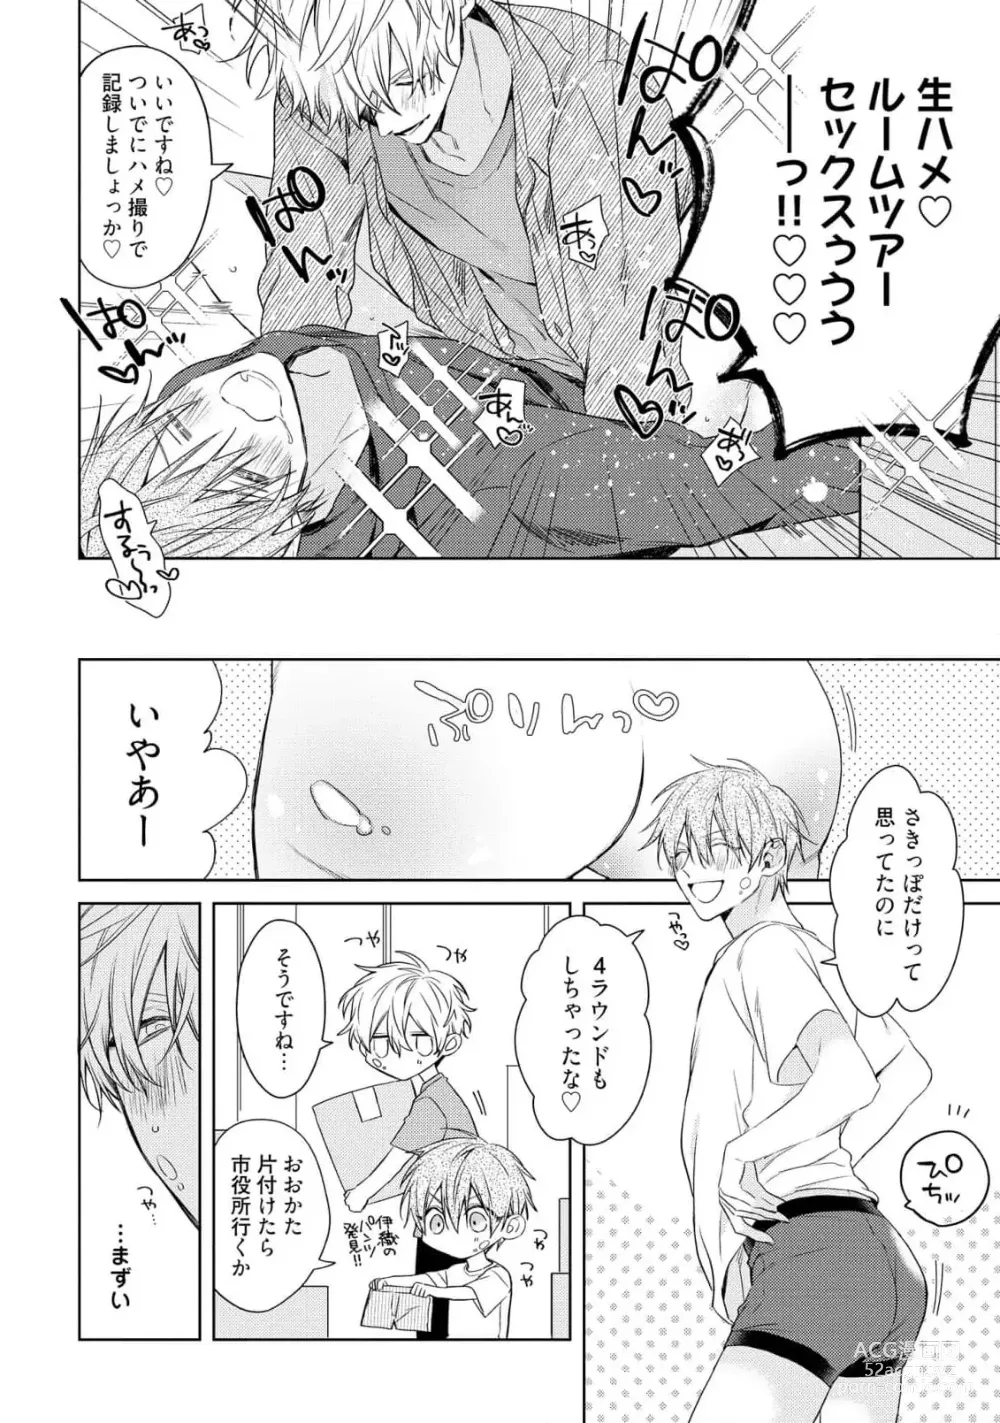 Page 10 of manga Motto! Ecchi wa shuu 7 Kibou Desu!